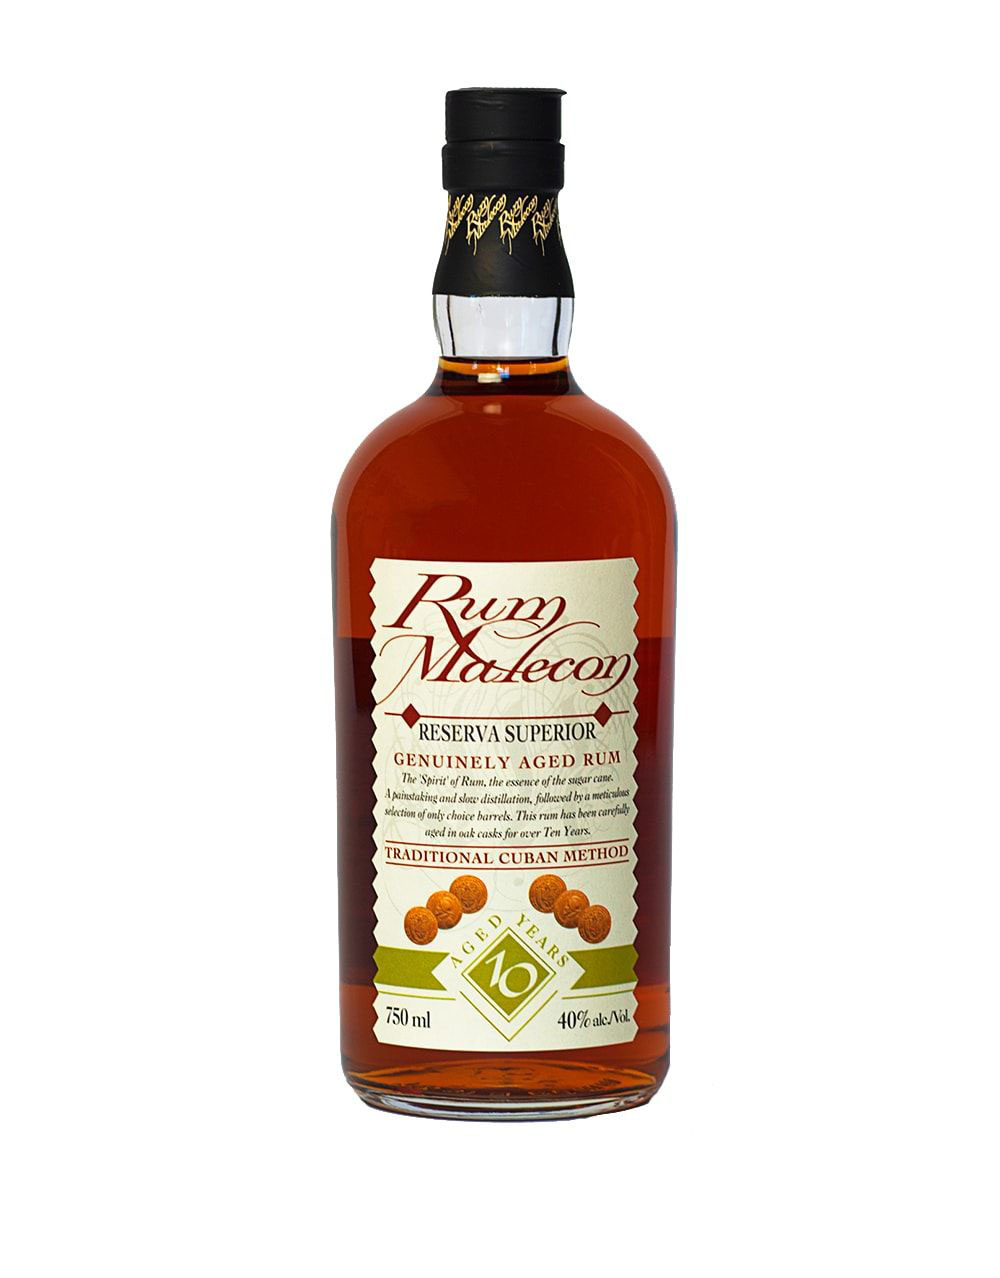 Bacardi Punch Rum